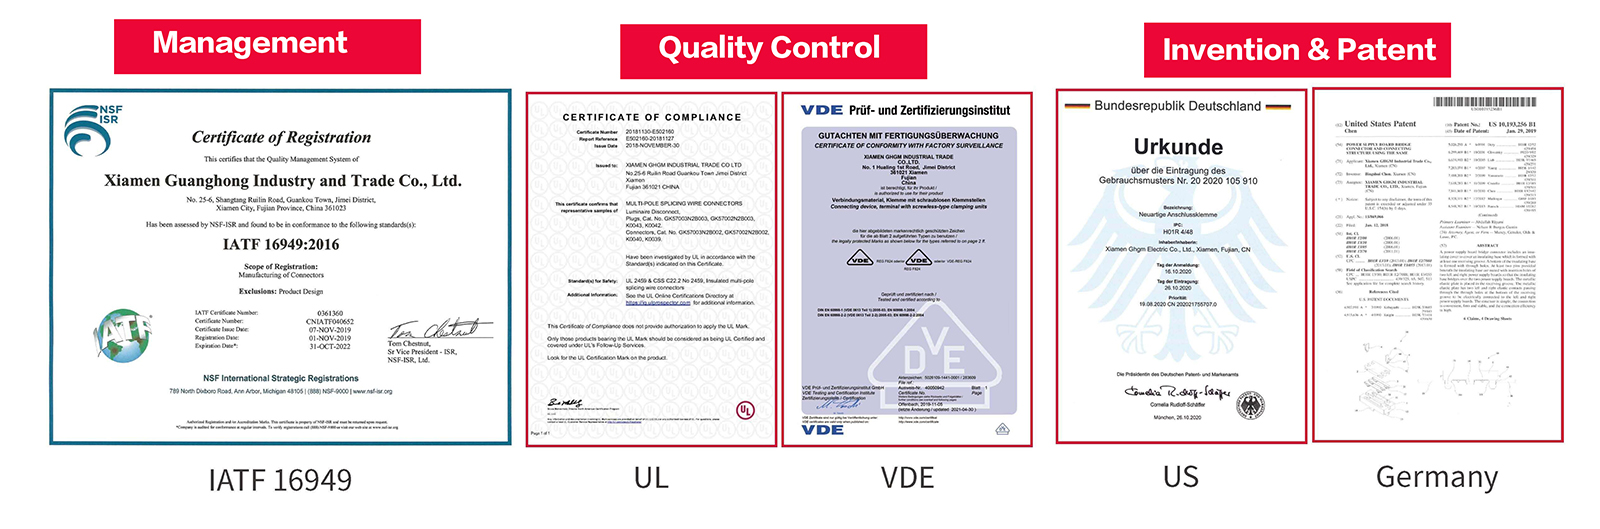 Сертификат GHGM, контроль качества, изобретение и патенты.jpg